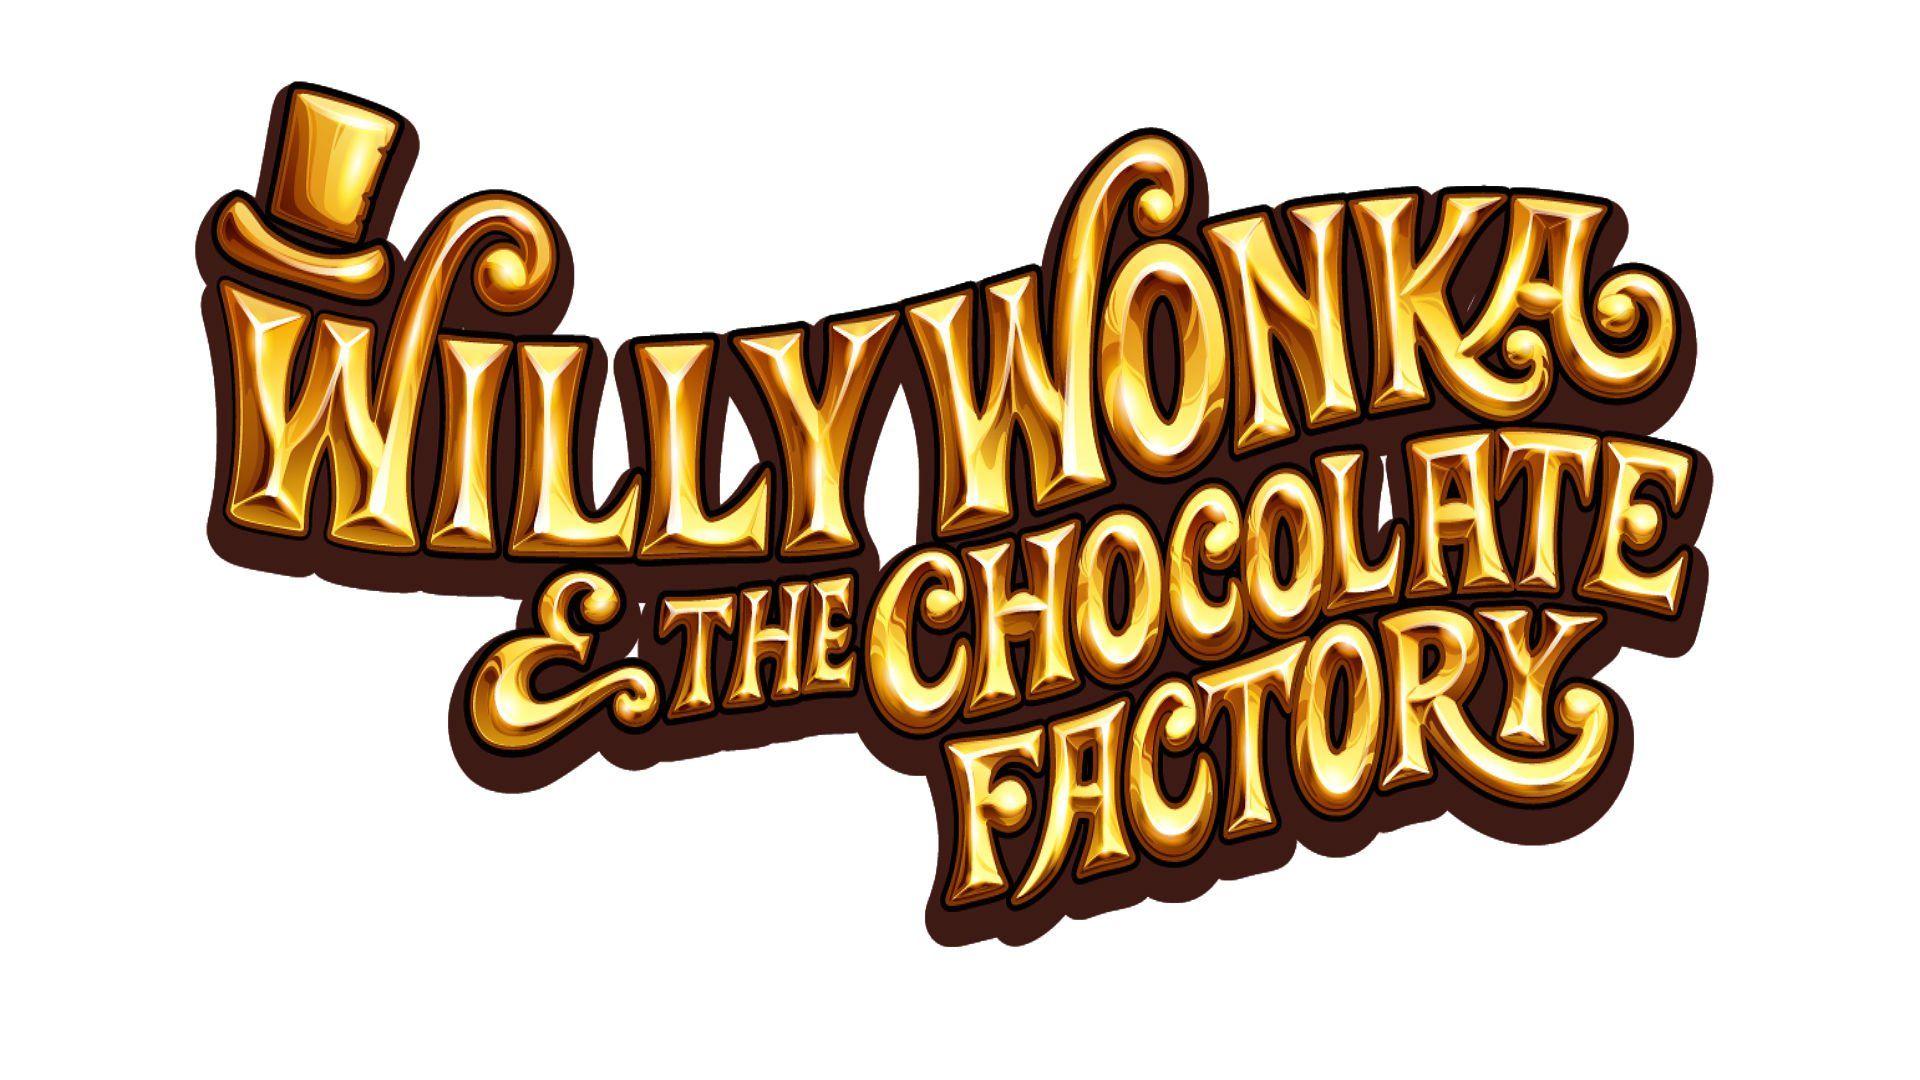 Шоколадная фабрика автор. Willy Wonka шоколадная фабрика. Чарли и шоколадная фабрика на прозрачном фоне.